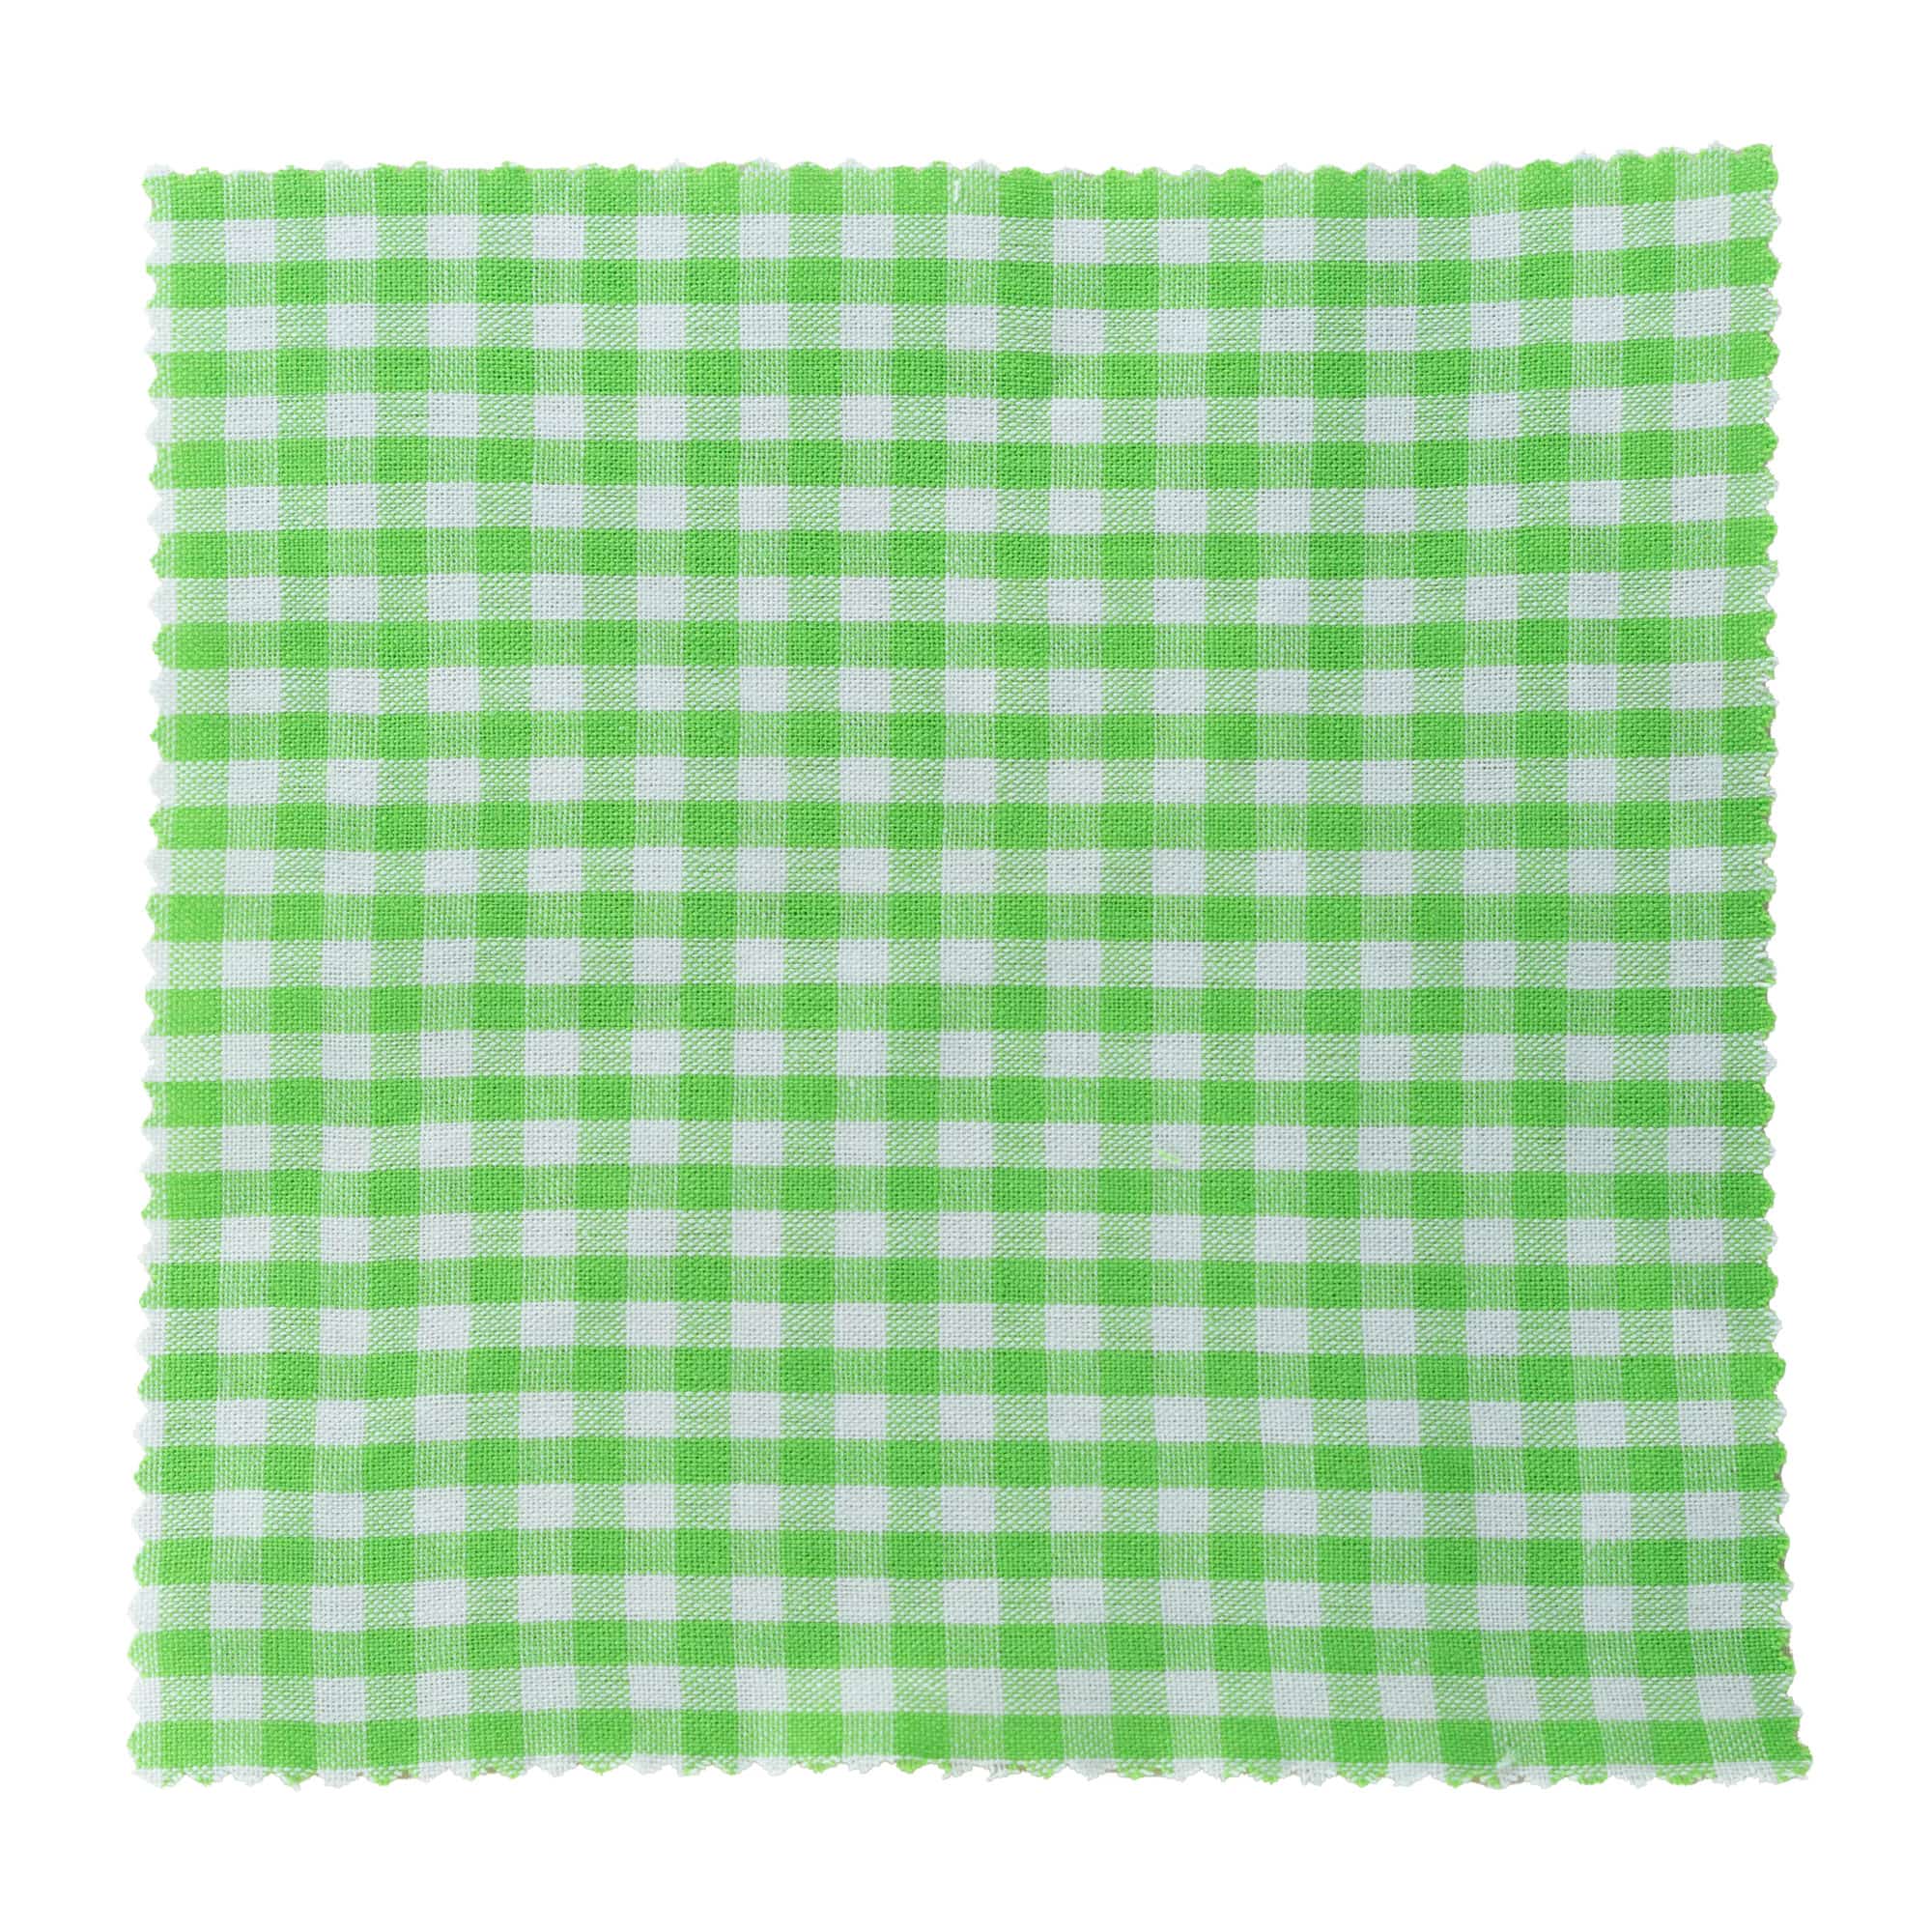 Kapturek na słoik w kratkę 15x15, kwadratowy, materiał tekstylny, kolor zielony w odcieniu liści lipy, zamknięcie: TO58-TO82